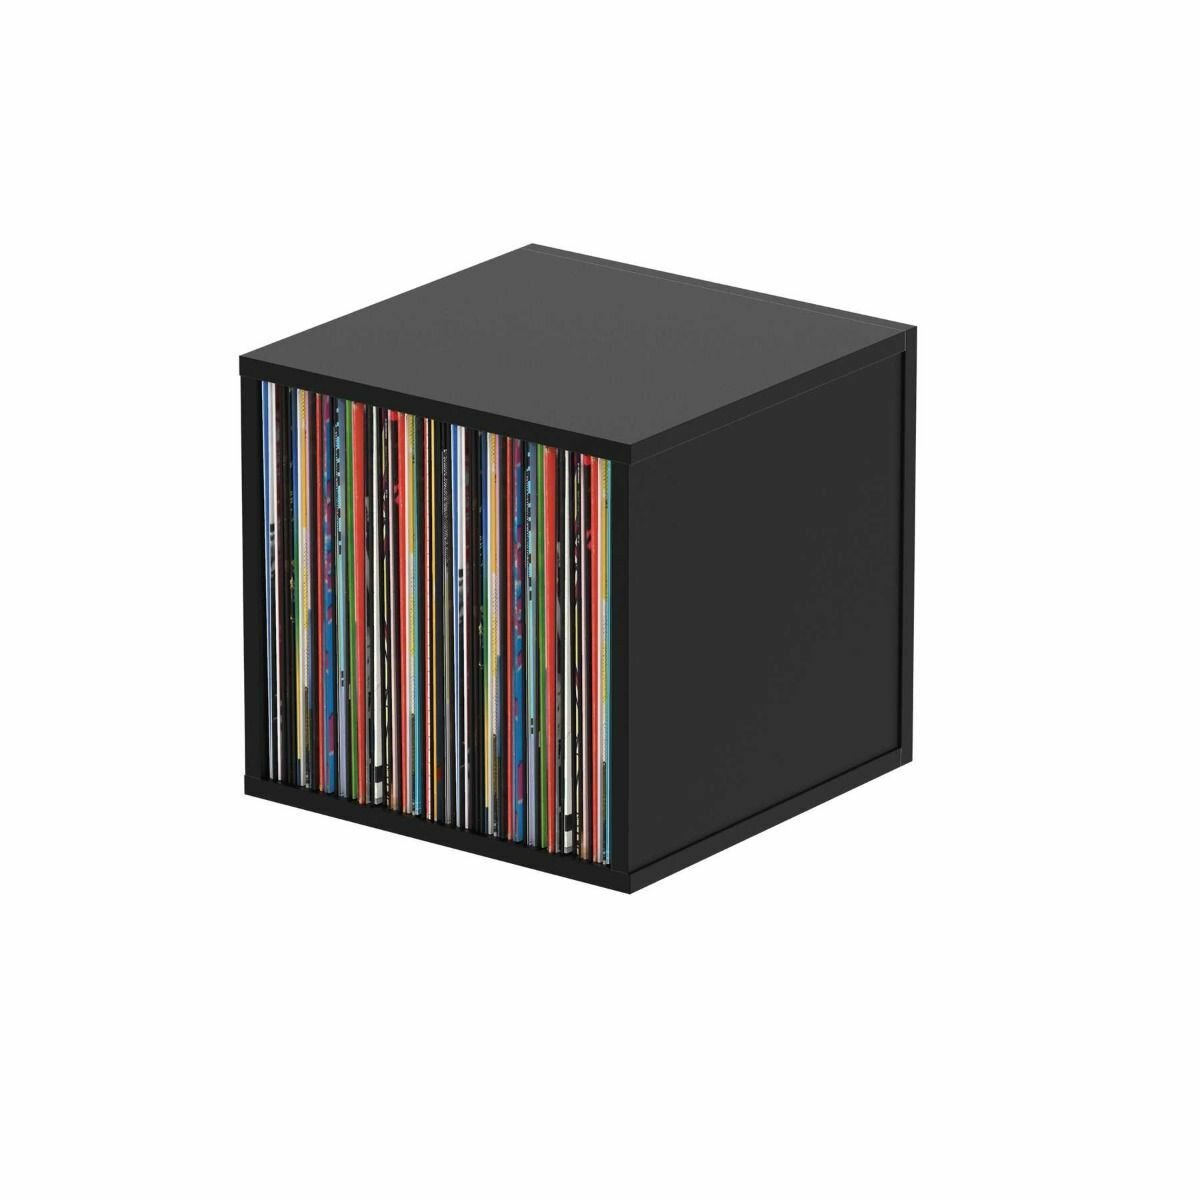 Glorious Record Box Black 110 подставка система хранения виниловых пластинок 110 шт. Цвет чёрный